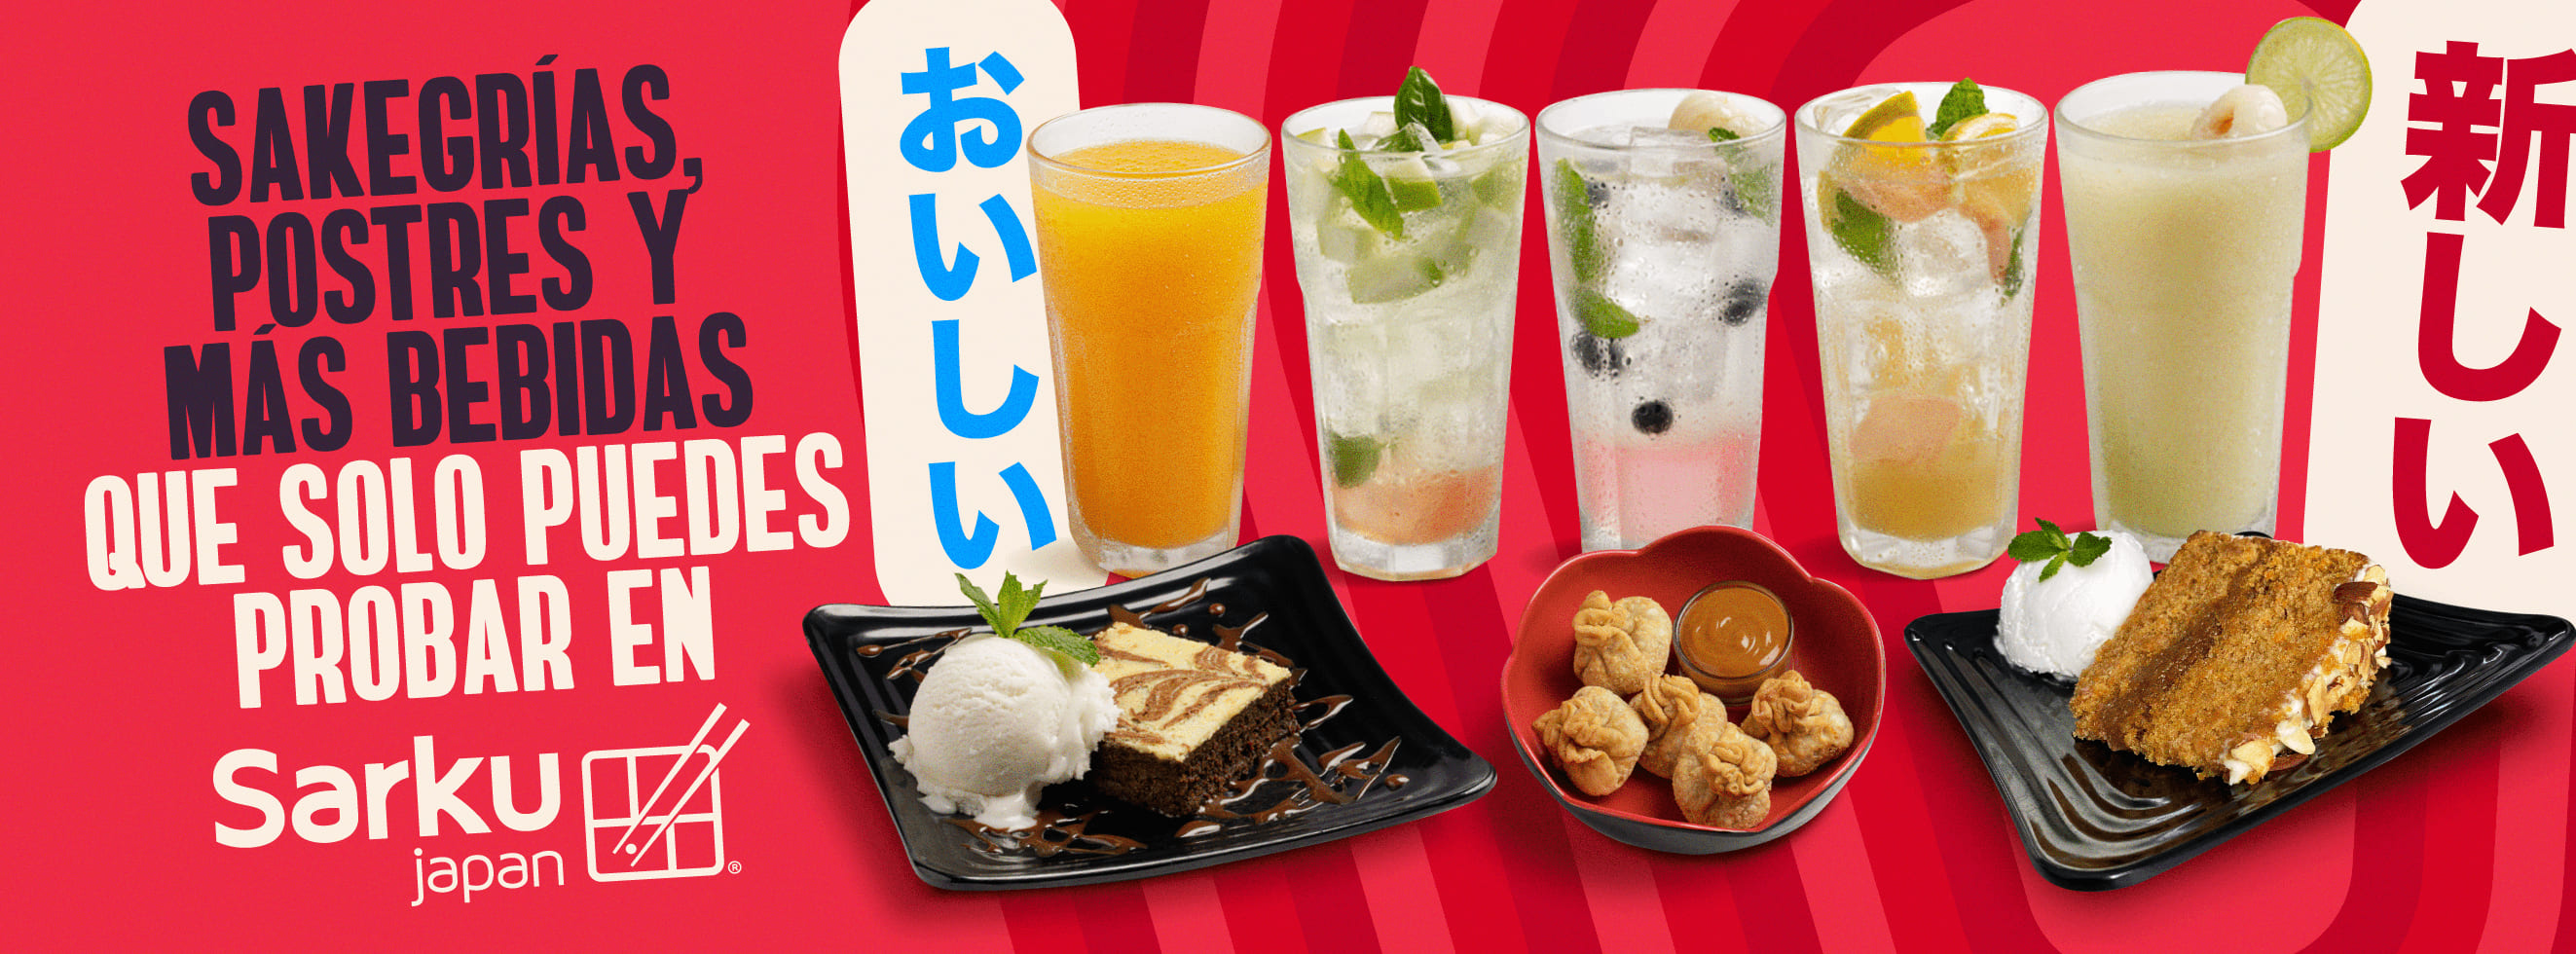 Sakegrías, postres y más bebidas que solo puedes probar en Sarku Japan